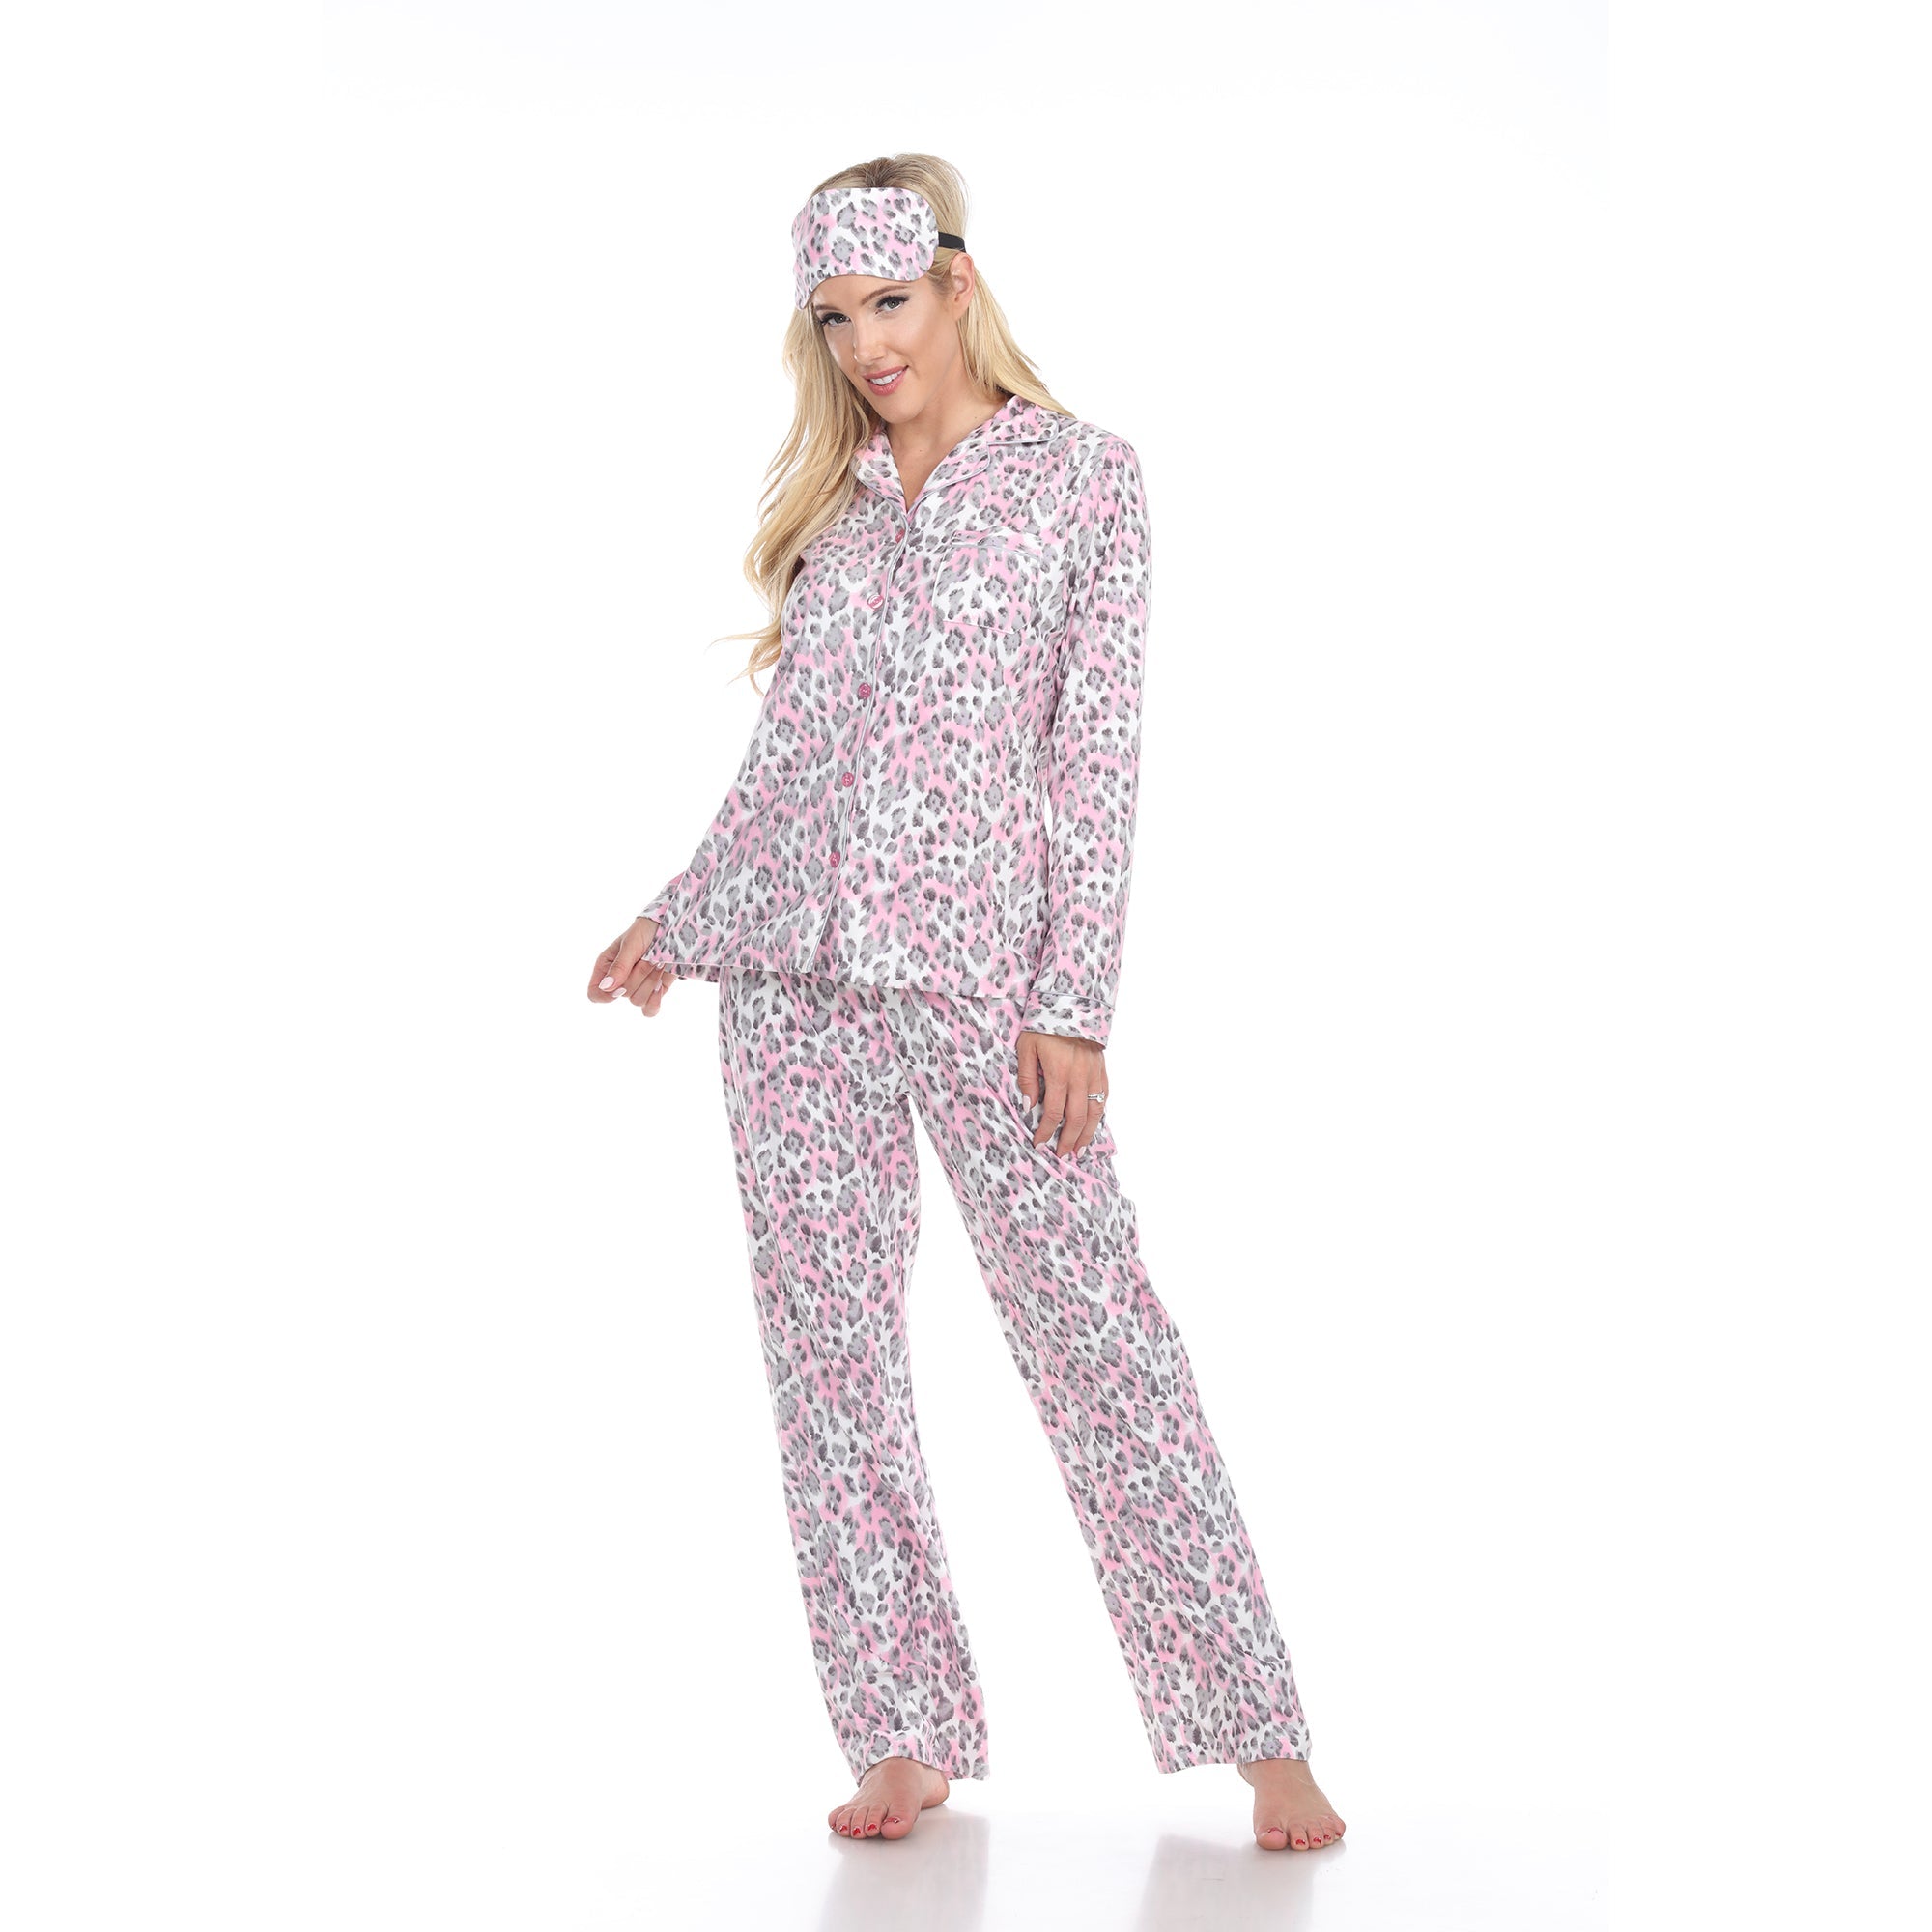 Women's Three-Piece Pajama Set - DressbarnLounge Sets